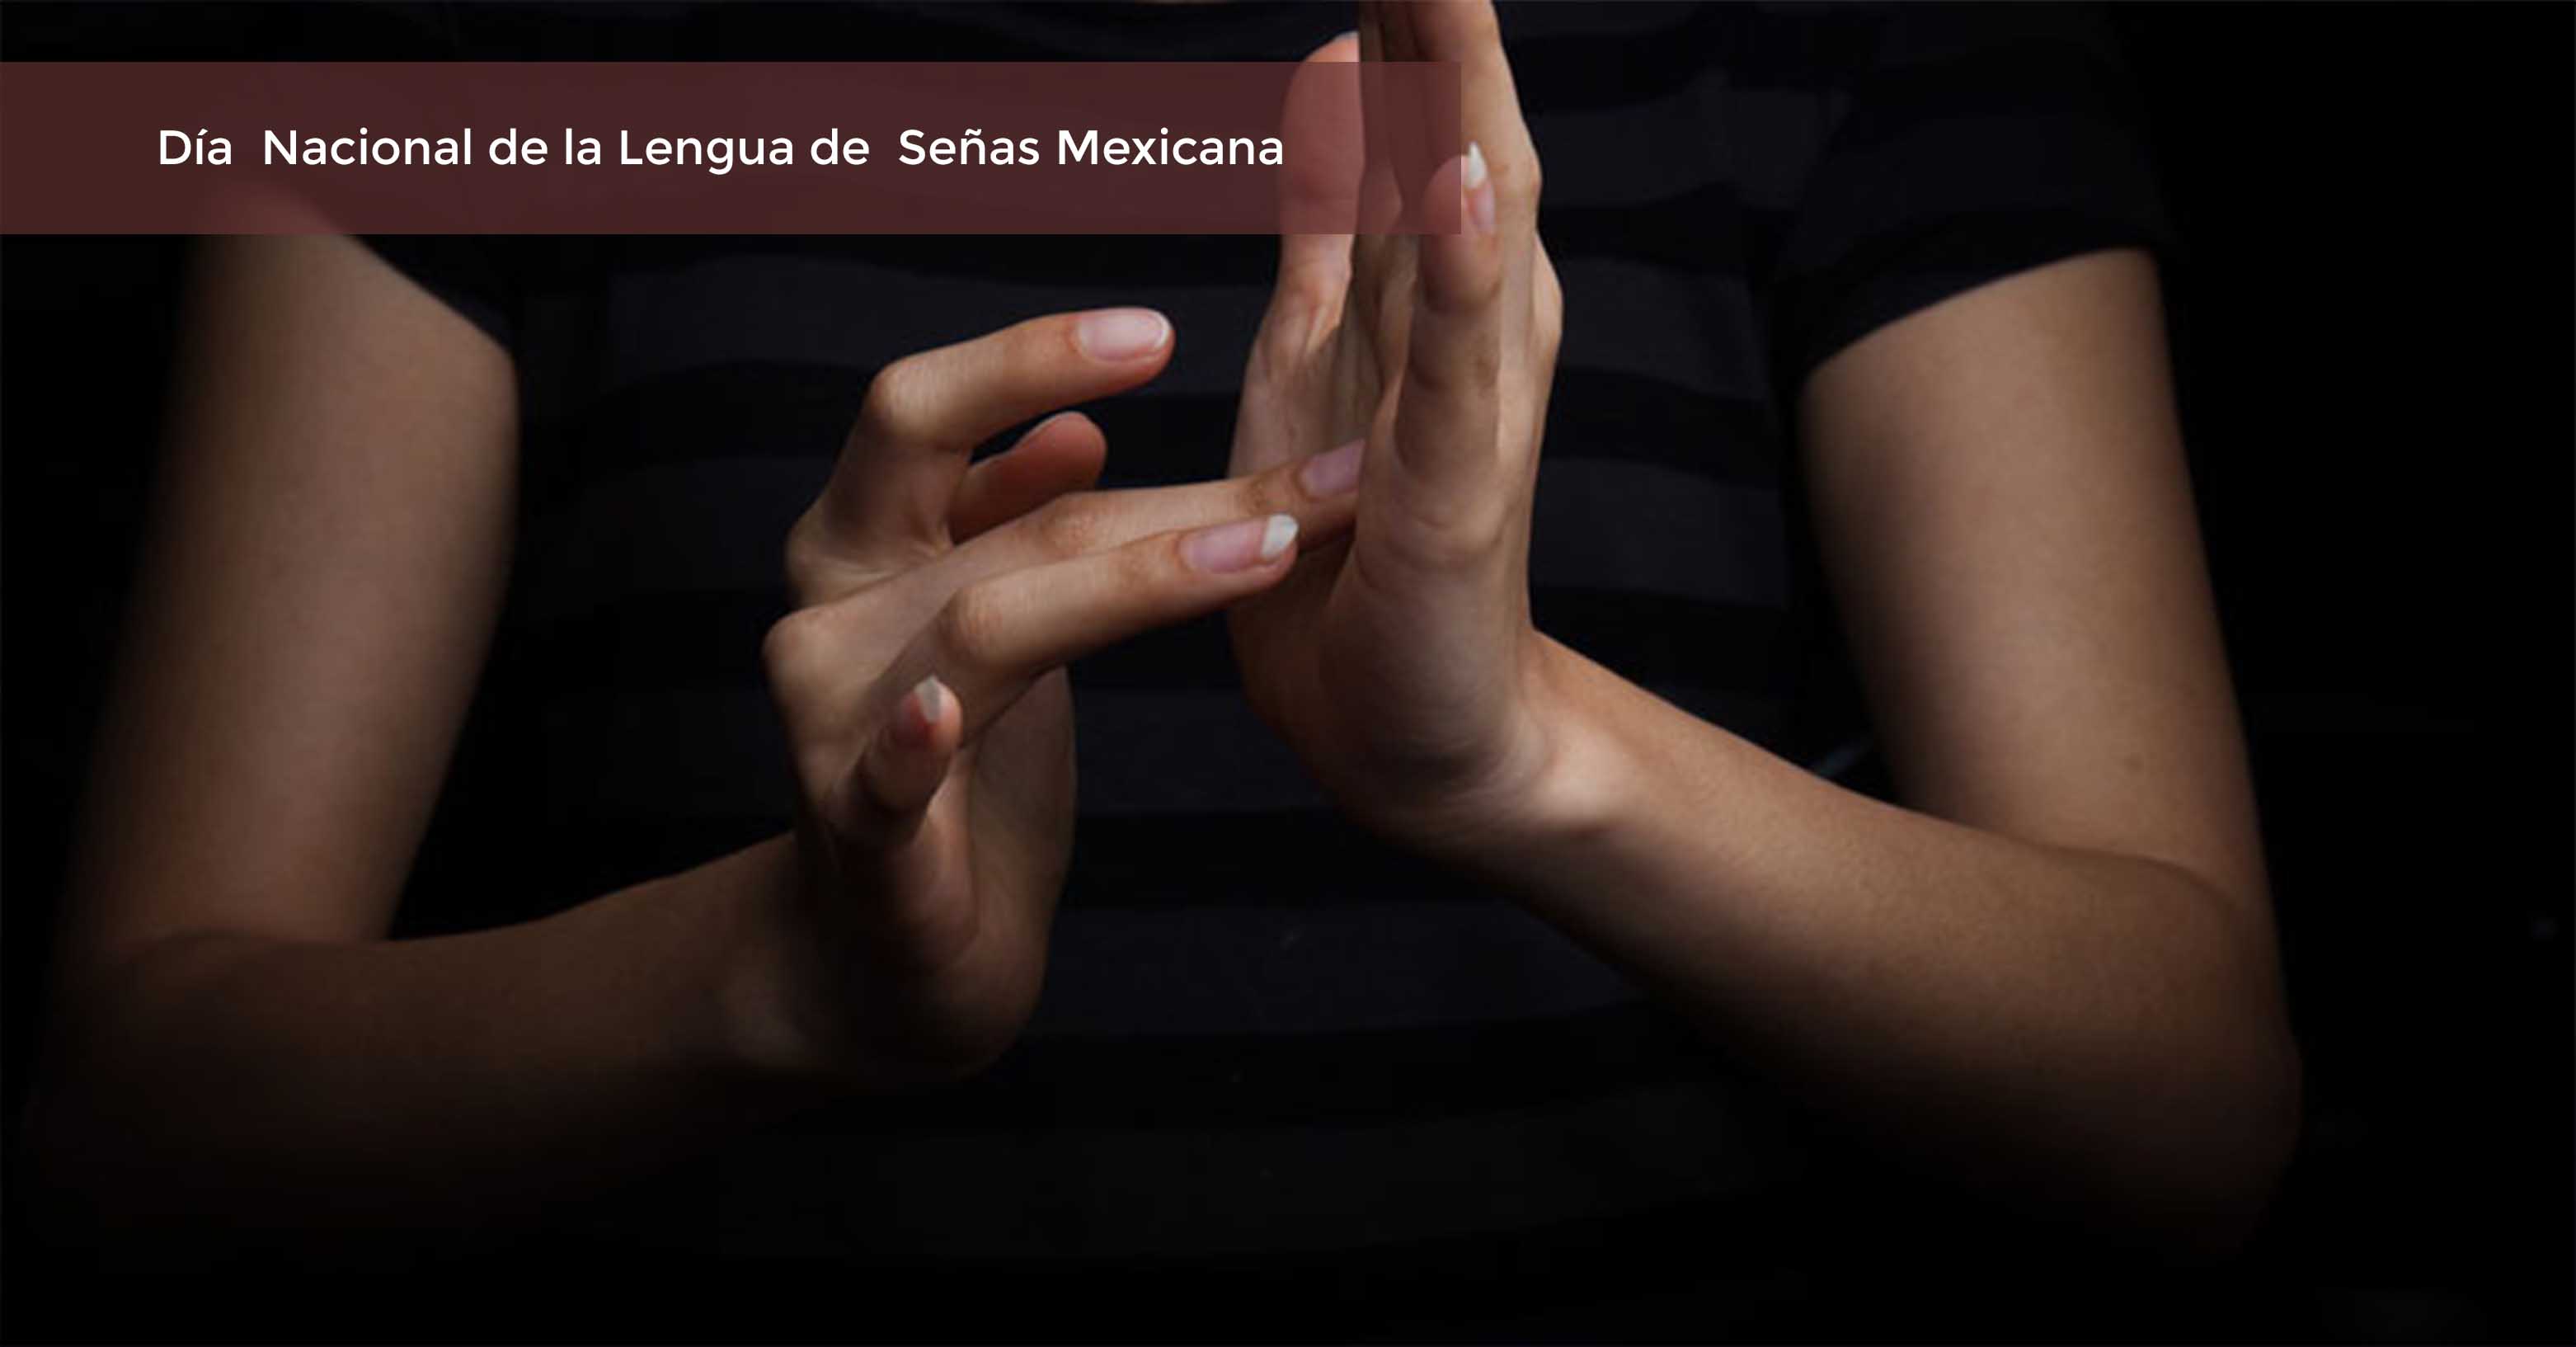 Persona hablando lengua de señas mexicana, sólo se visualizan sus manos y tiene un fondo negro